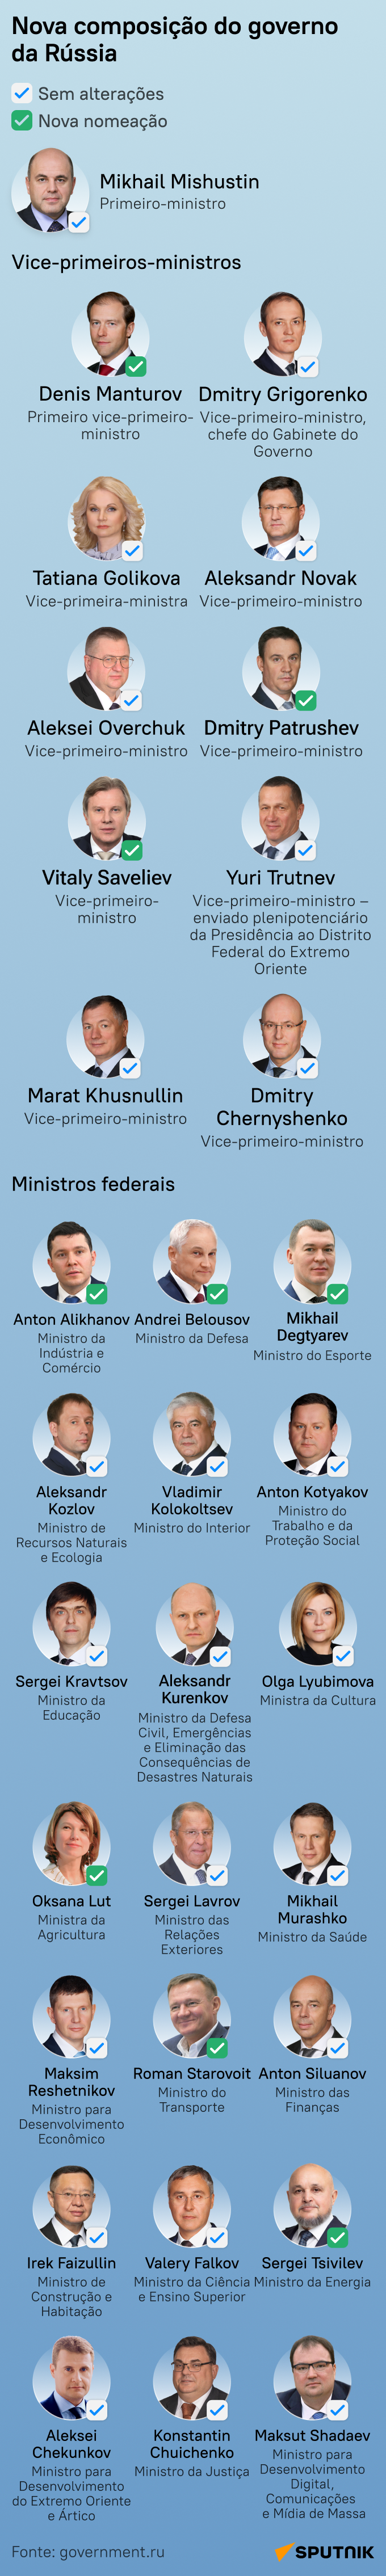 Novo governo da Rússia: descubra alterações na lista dos ministros - Sputnik Brasil